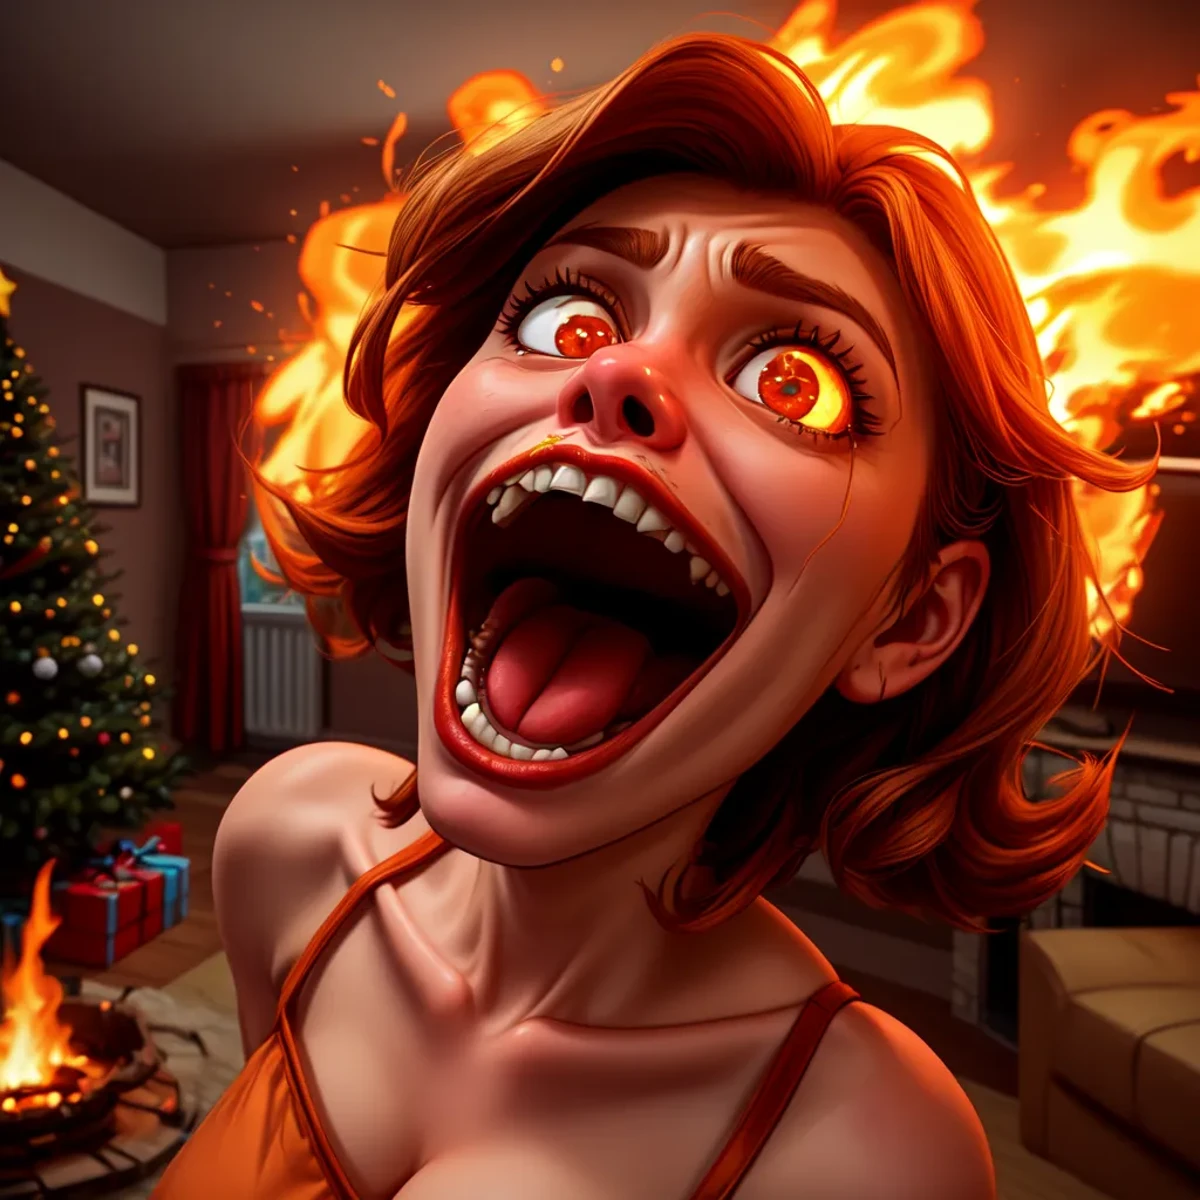 ยิงเต็ม. มุมดัตช์ หญิงสาวยืนตะลึง, อ้าปากค้างในแบบการ์ตูน: อ้าปากกว้าง, her อ้าปากกว้าง looking at a burning Christmas tree in the middle of a room.. ในรูปแบบของการ์ตูน: กรามปากกว้างเปิดกว้างแสดงสีหน้าโอ้อวด. พื้นหลังเป็นห้องที่ถูกไฟไหม้, ควันสีส้มหนา